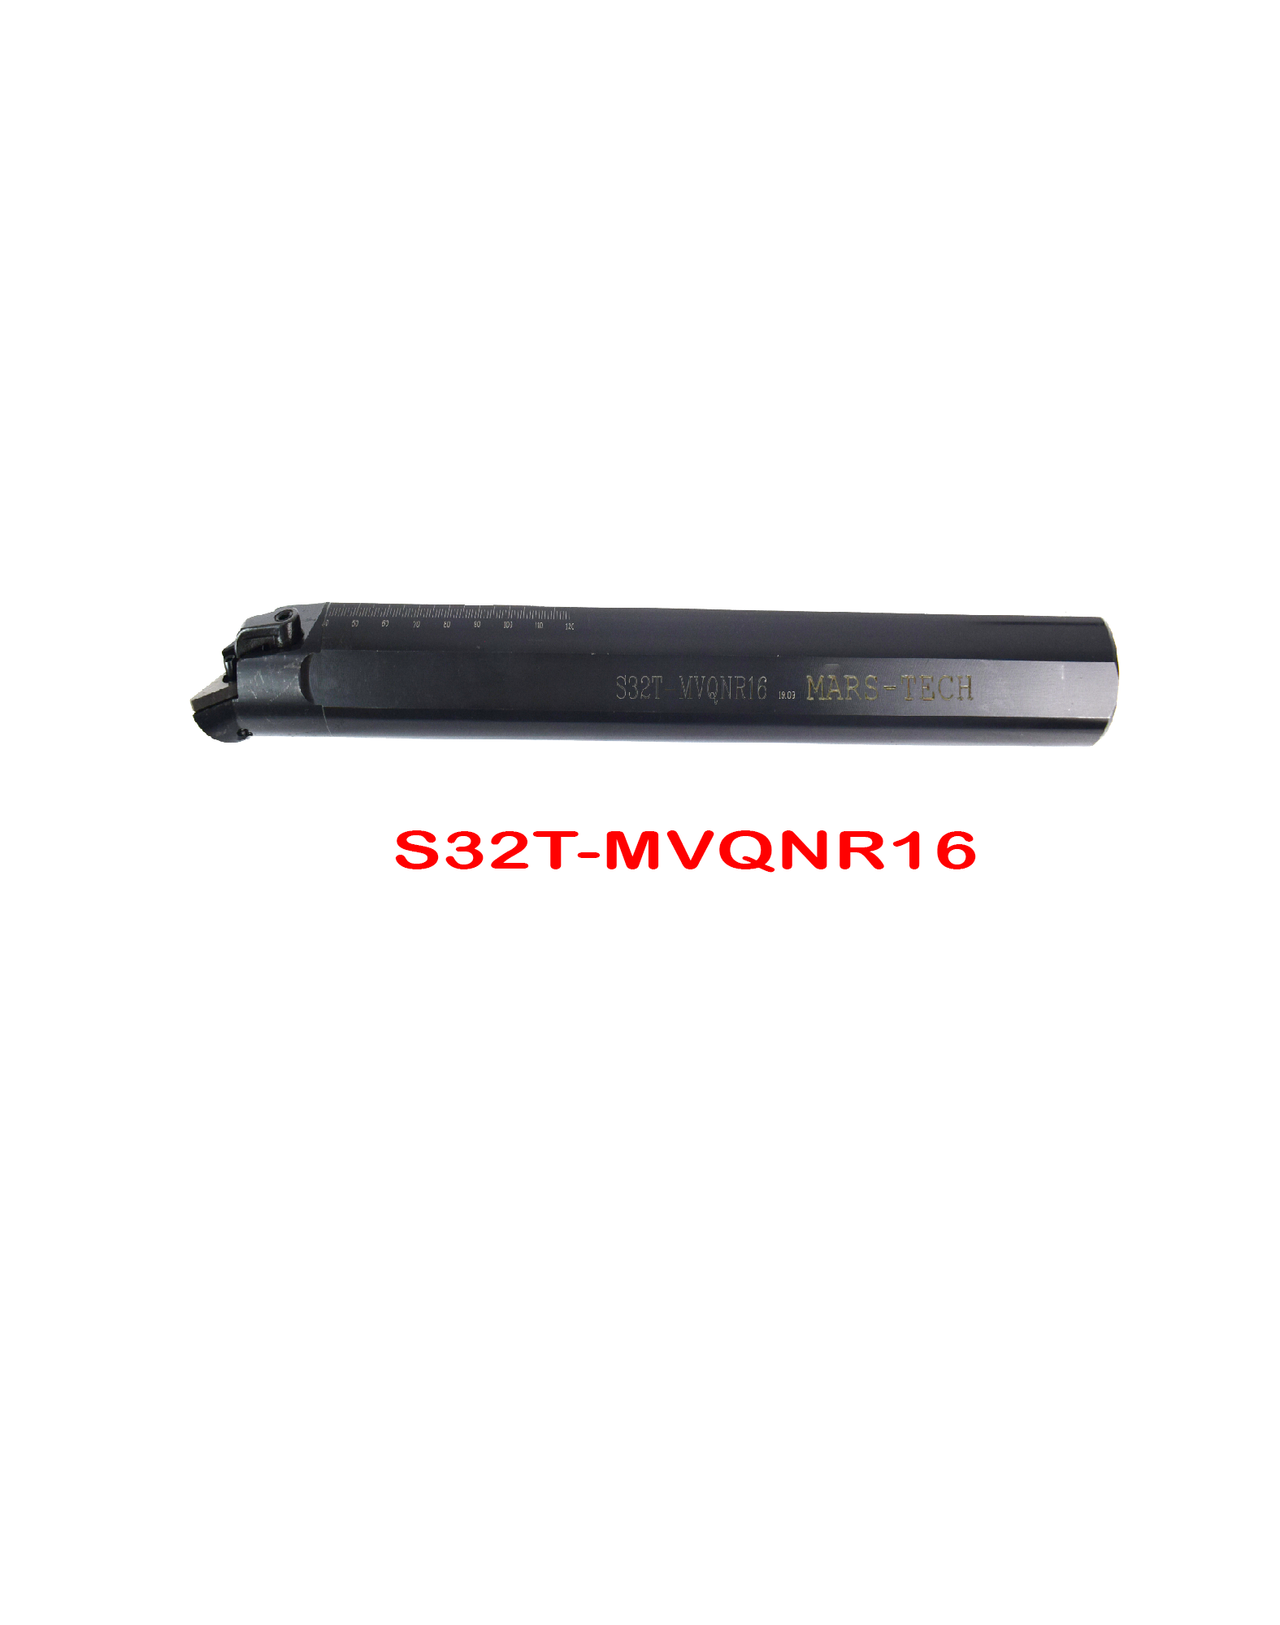 MVQNR/L VNMG1604 boring bar angle Boring Bar dia 25/32 pack of 1